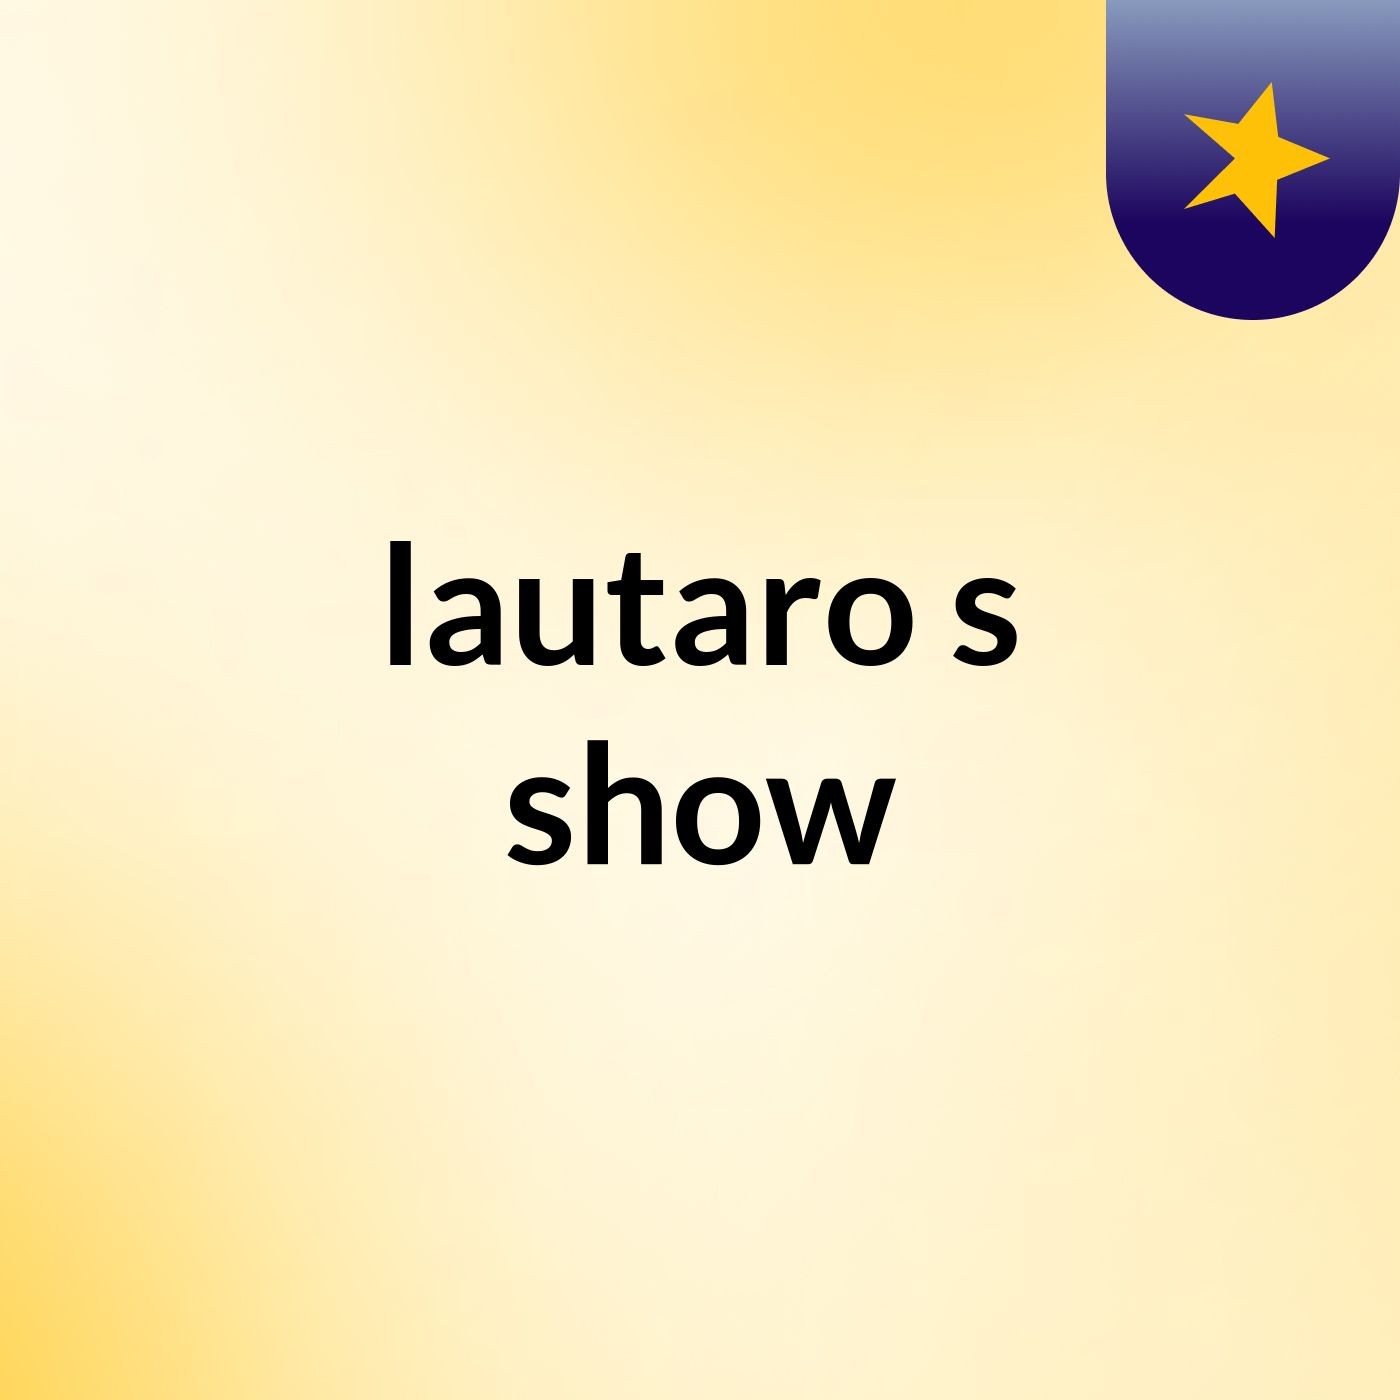 lautaro's show